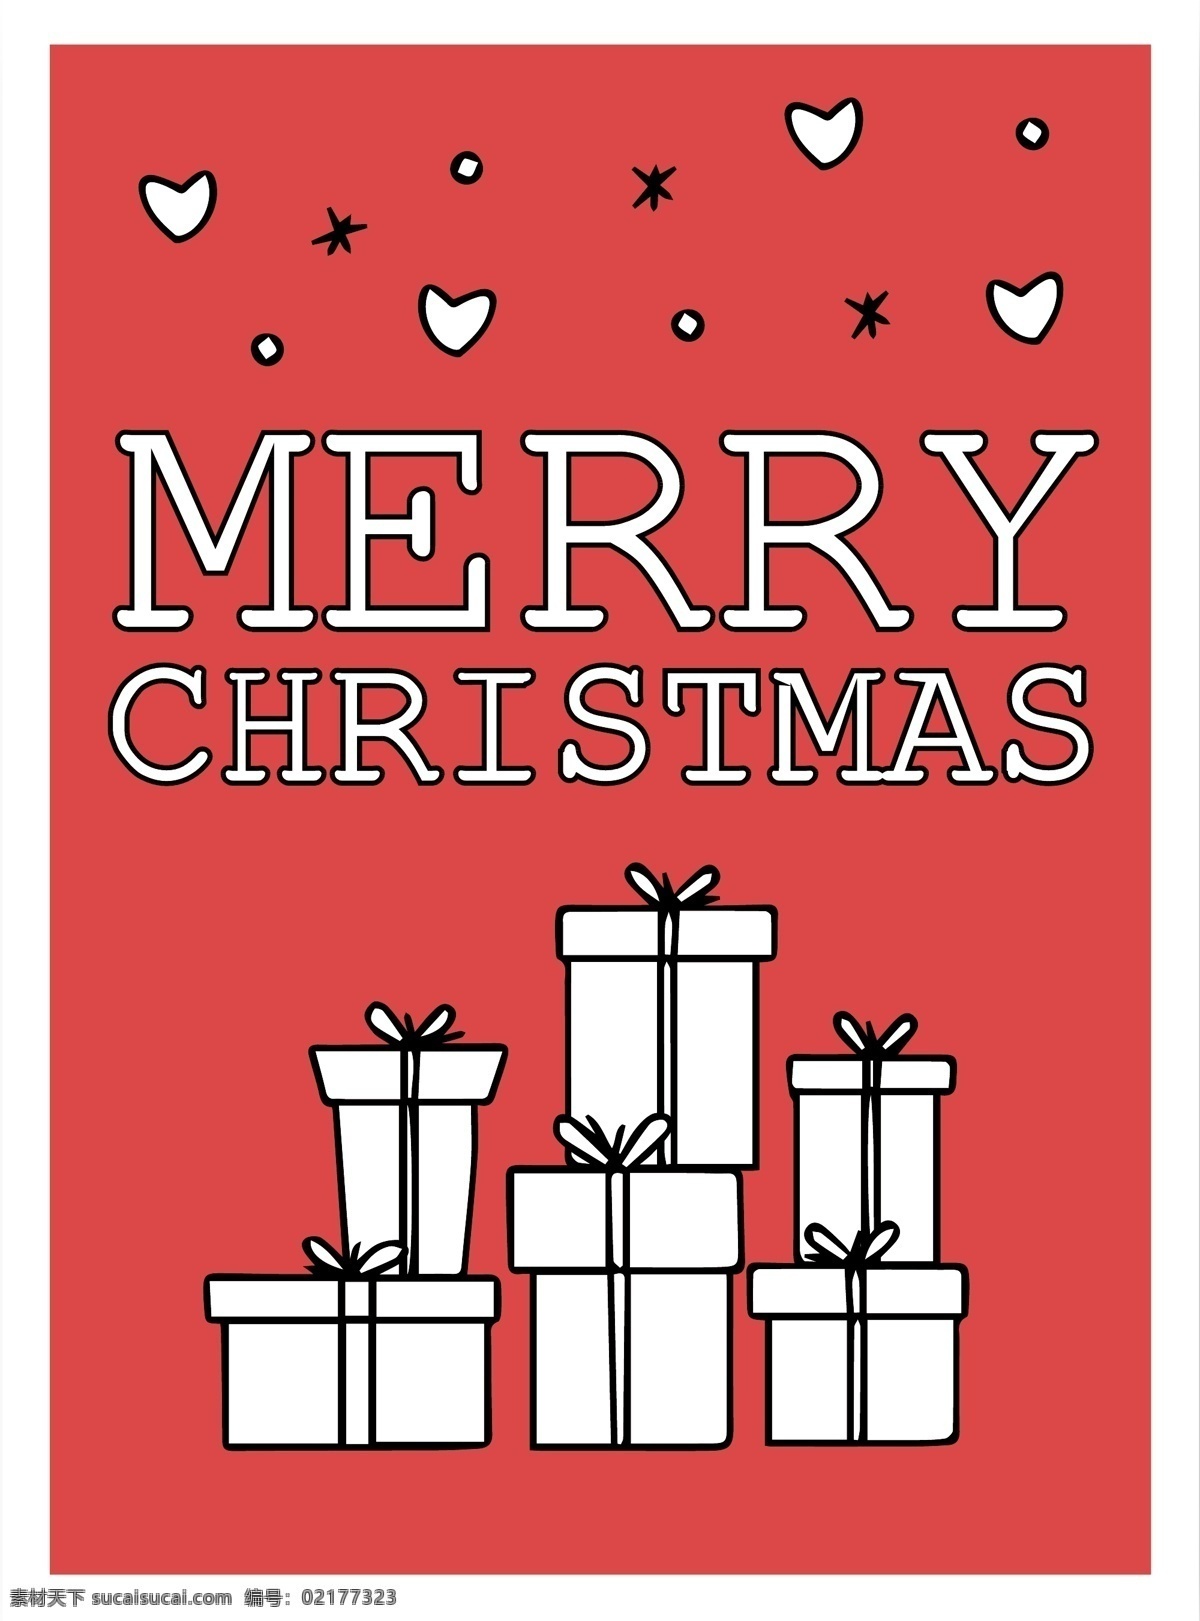 欧式 圣诞节 字体 贺卡 手绘 背景 红色背景 礼物 可爱圣诞元素 圣诞快乐 可爱贺卡 童趣 喜庆 欧式贺卡 彩色贺卡 矢量图